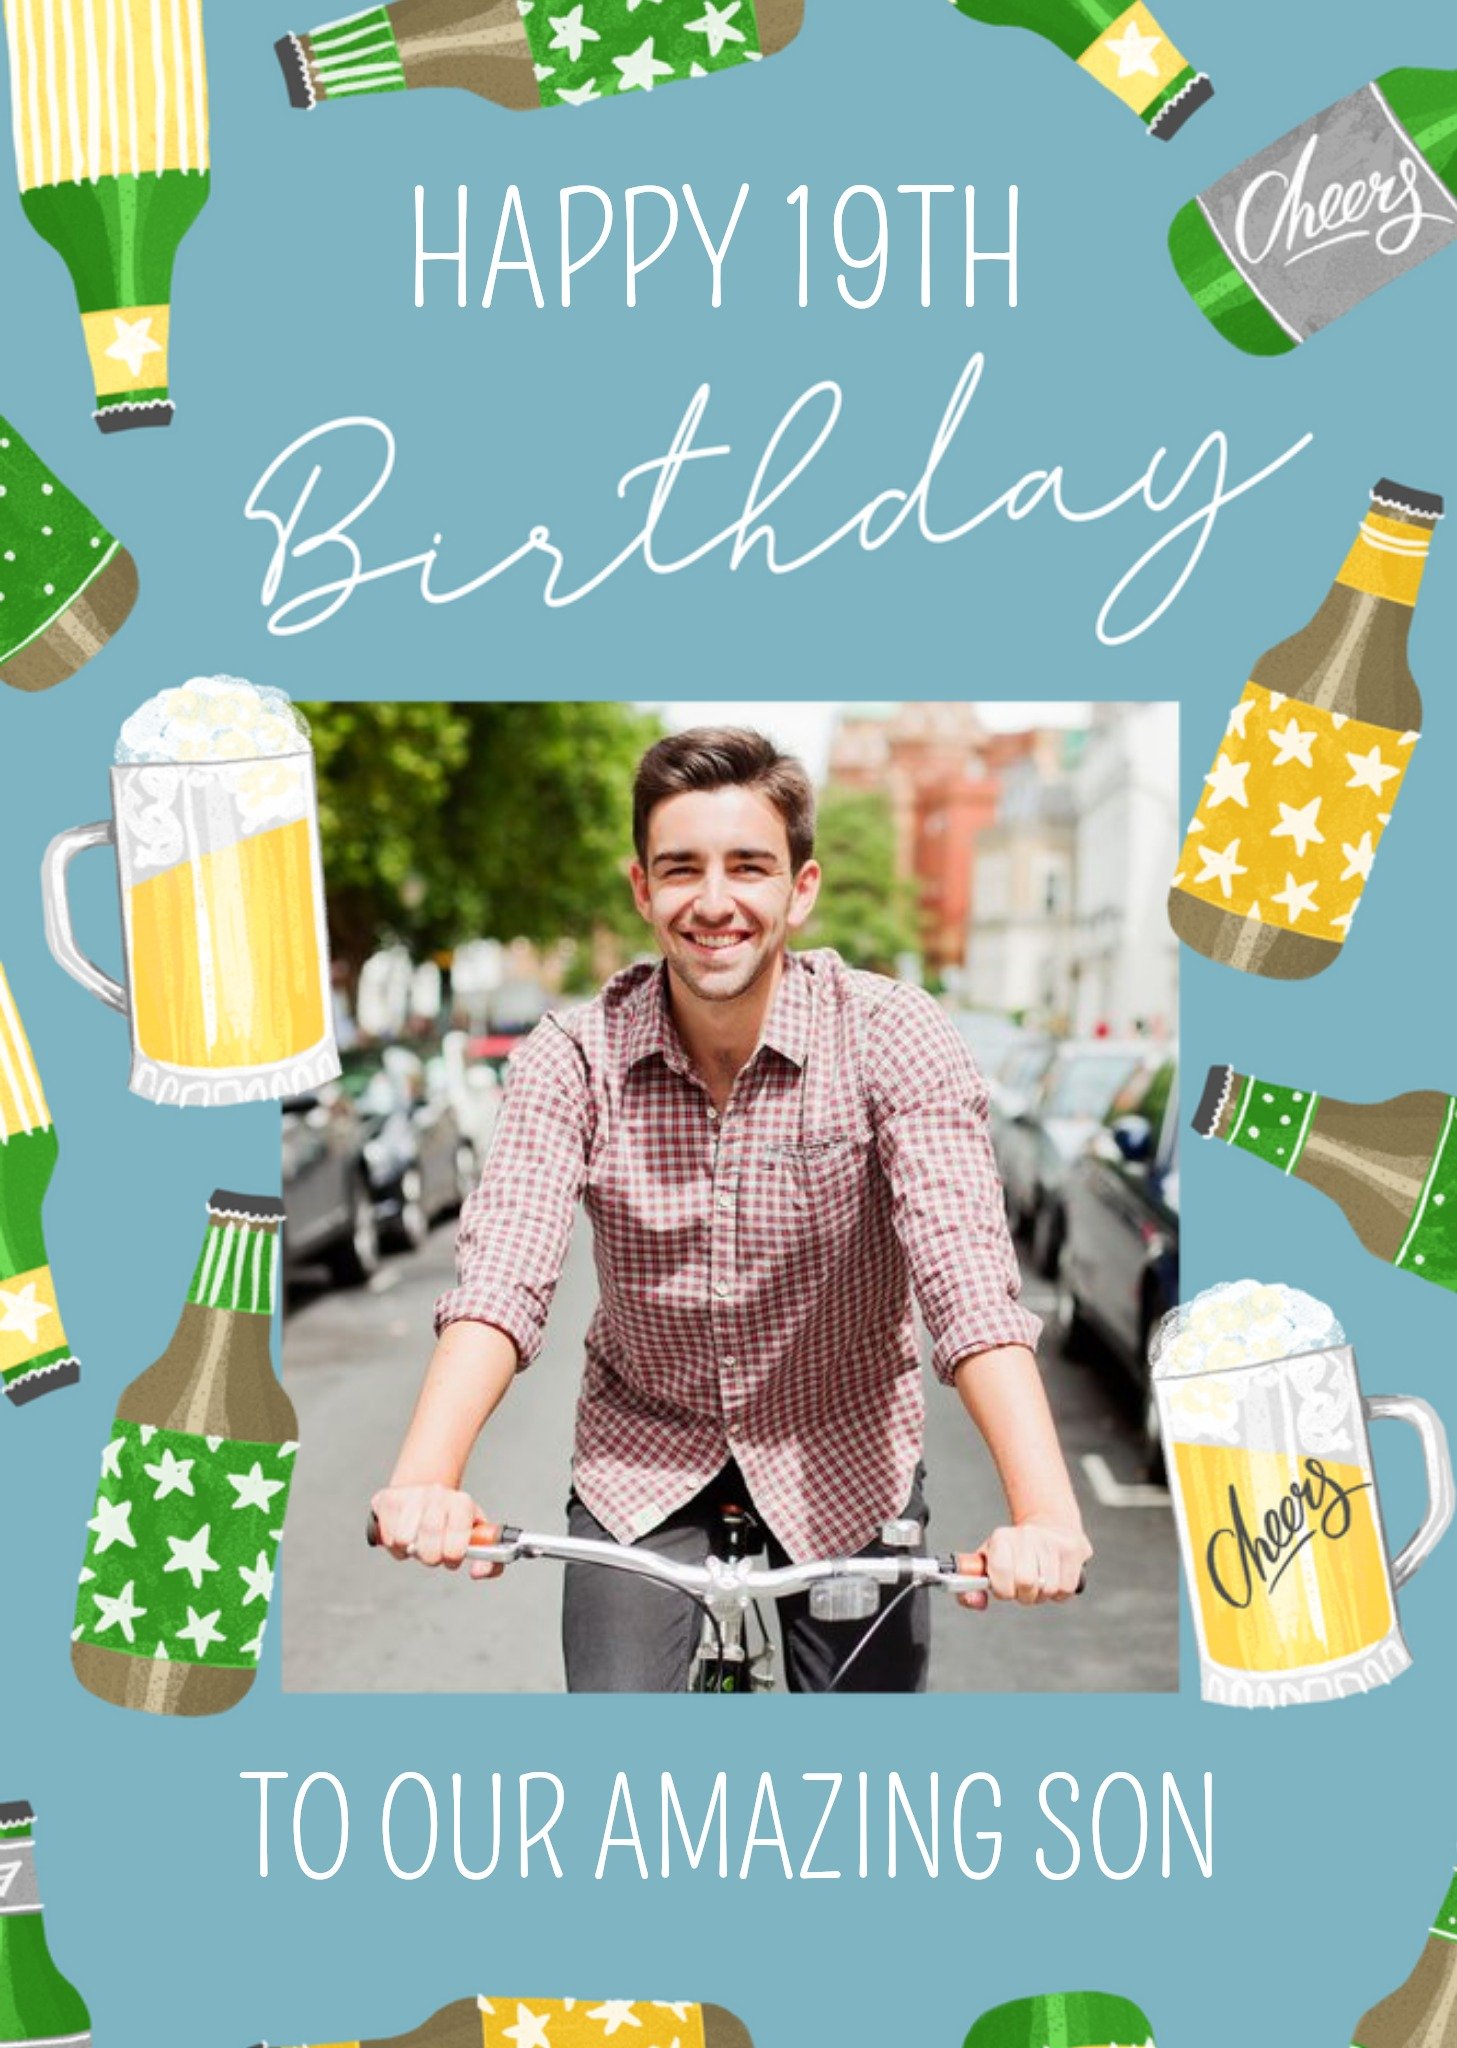 Okey Dokey Design Beer Illustrations Photo Upload Amazing Son Birthday Card, Large